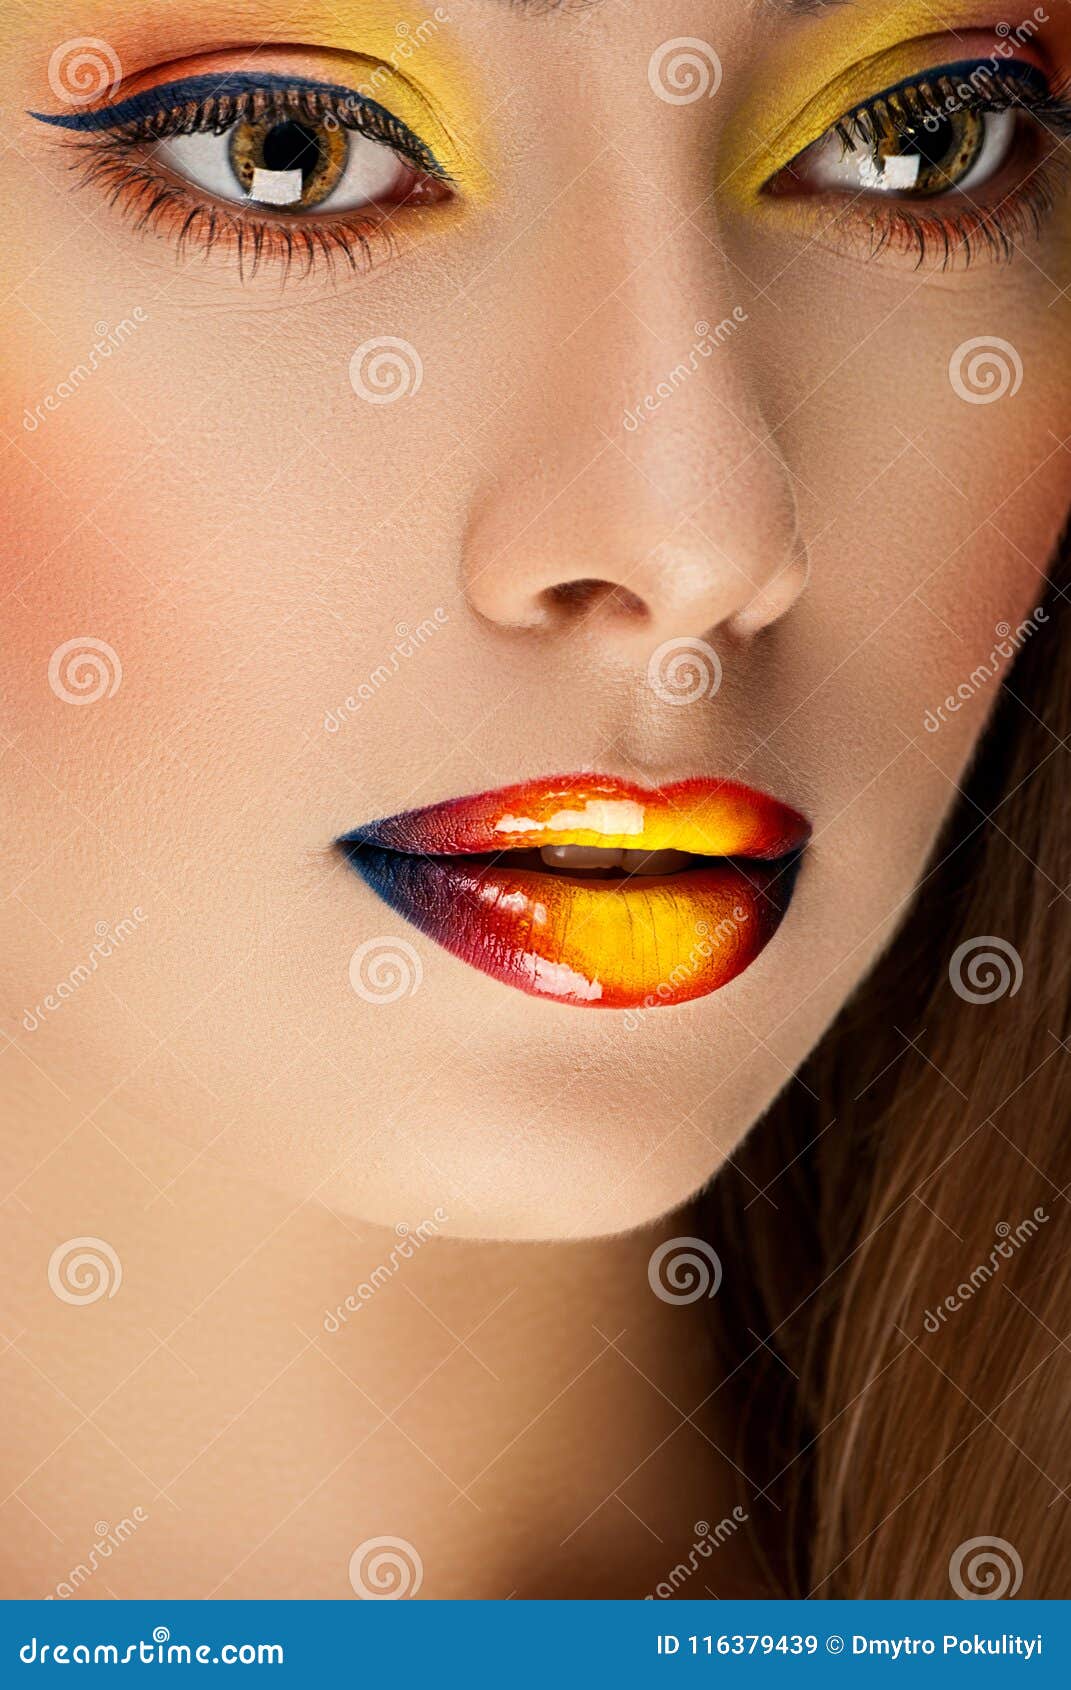 De La Belleza Con Maquillaje Colorido Del Arte Imagen de archivo - Imagen de 116379439